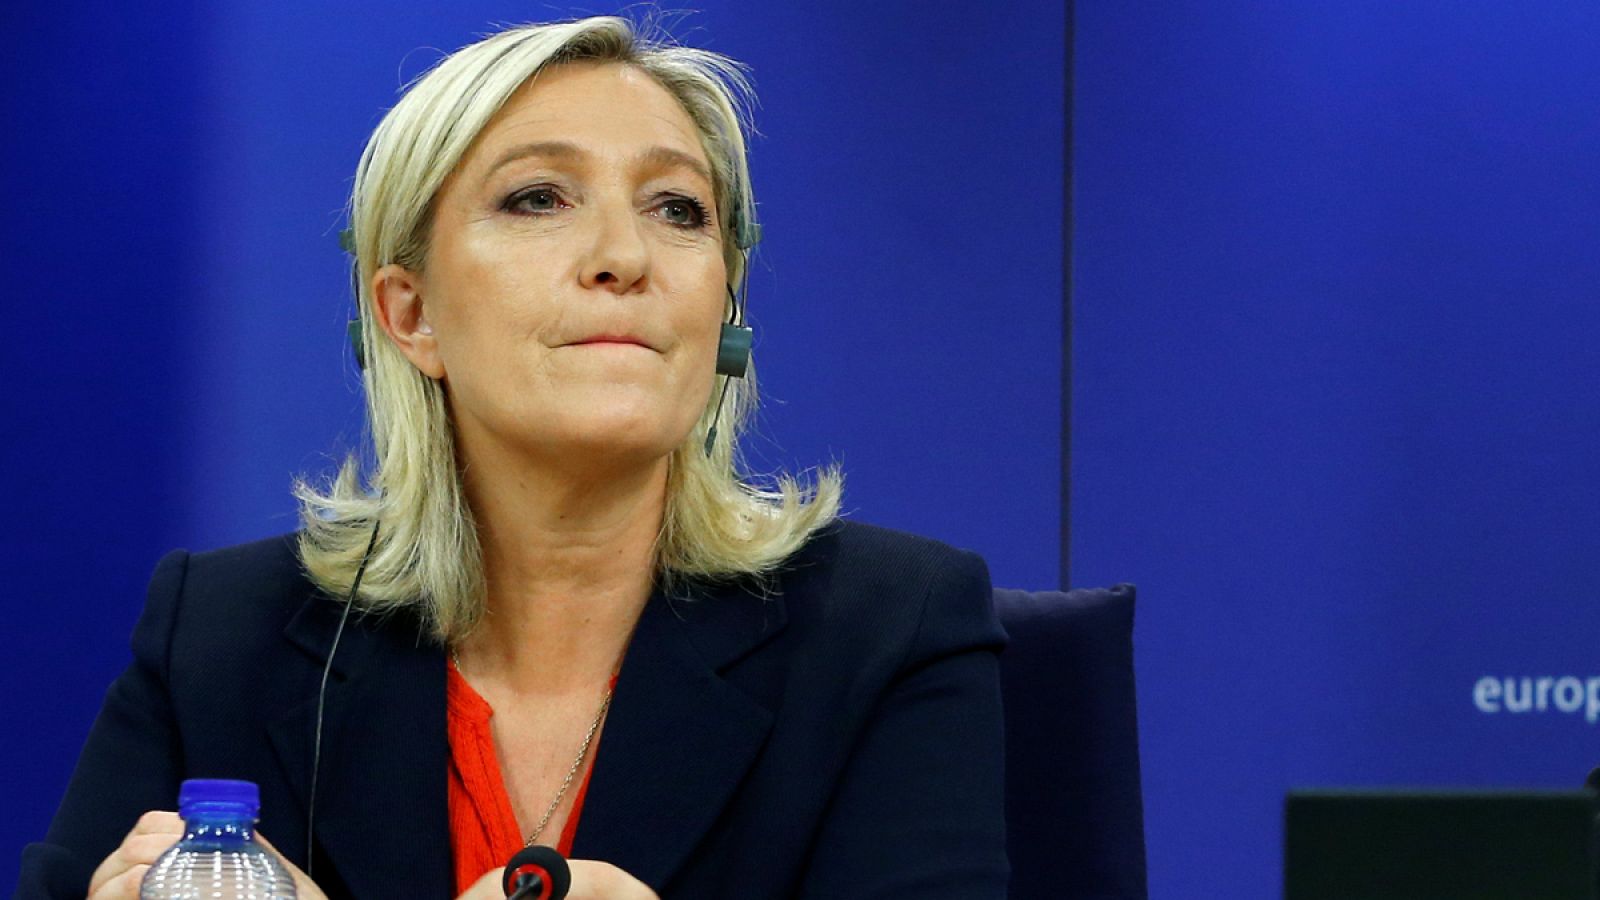 La líder del Frente Nacional francés, Marine Le Pen, durante una rueda de prensa en el Parlamento Europeo en Bruselas